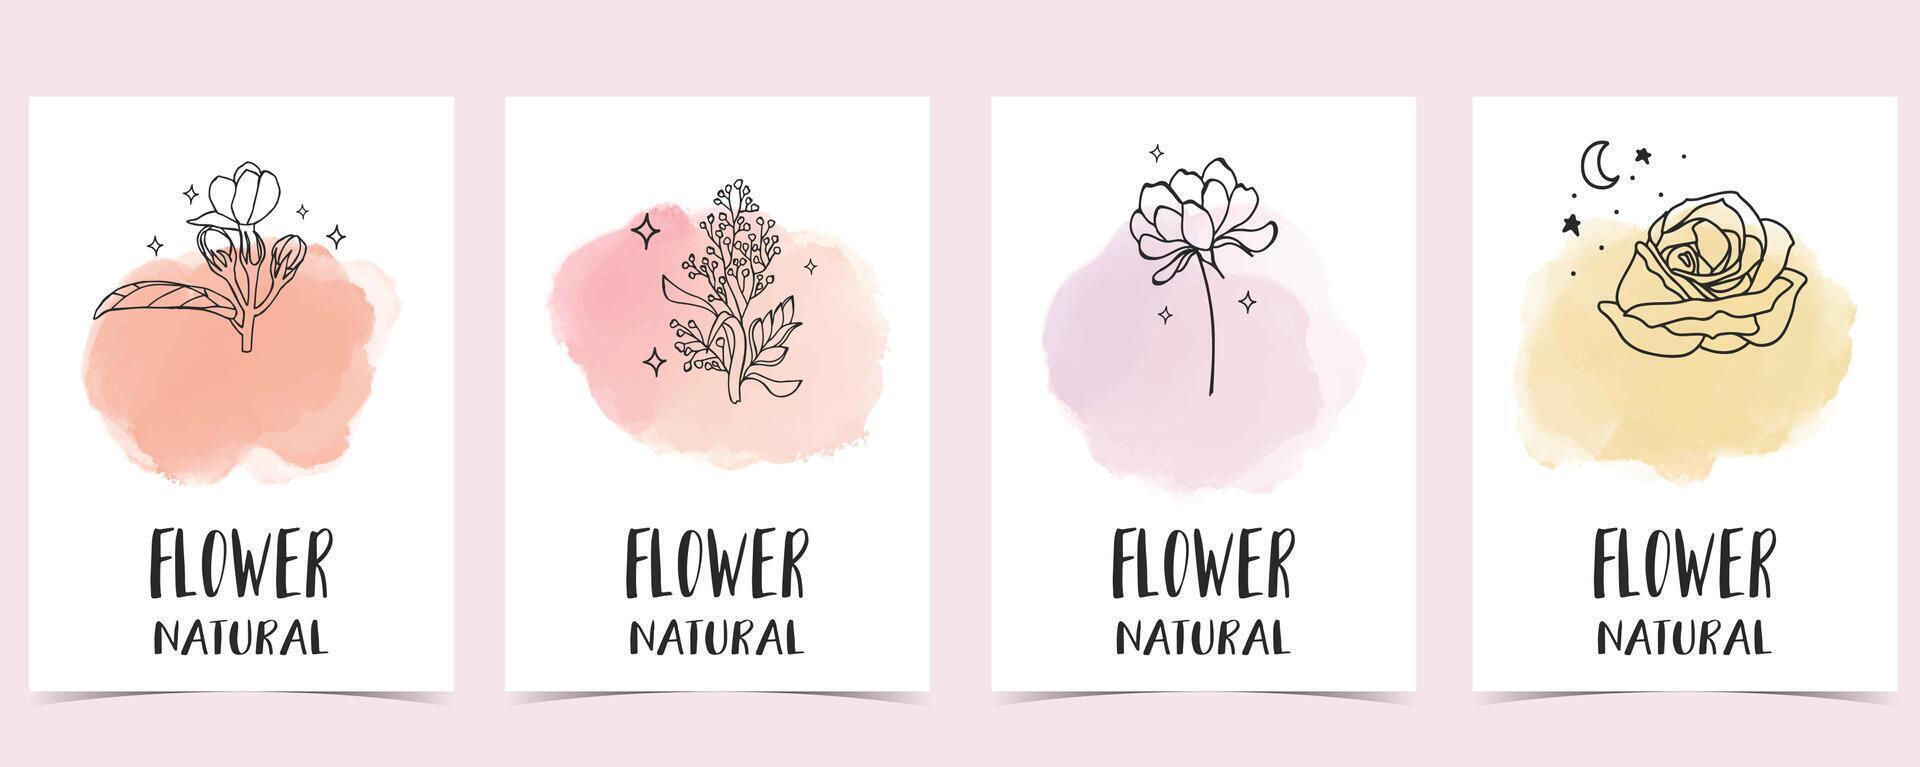 flower background with jasmine,lavender,rose.illustration for a4 page design vector